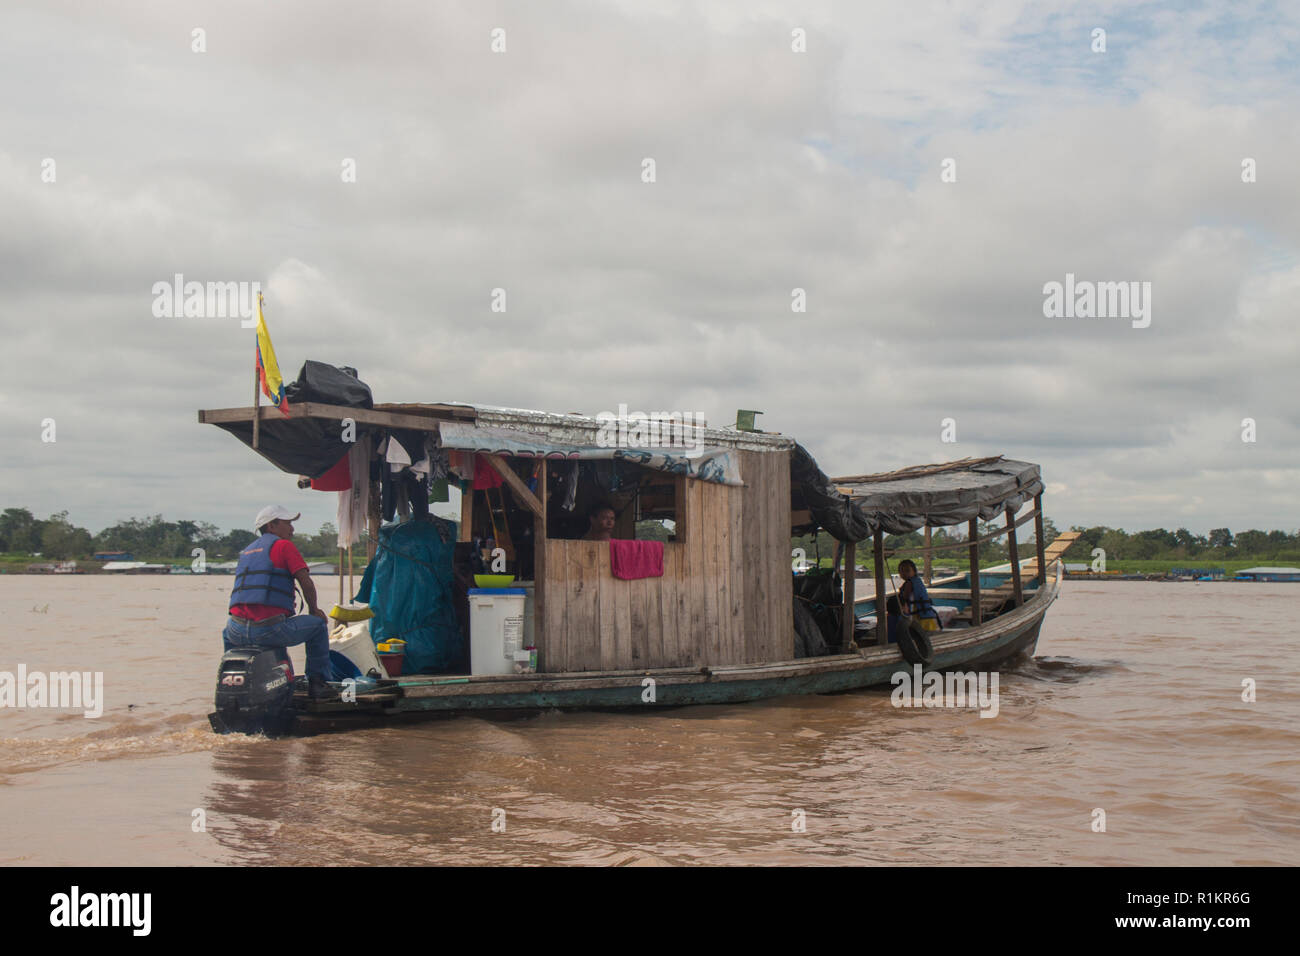 Leticia, Amazon river, en Colombie - 10/12/2015, maison bateau croisière sur le fleuve Amazone près de la ville de Leticia Banque D'Images